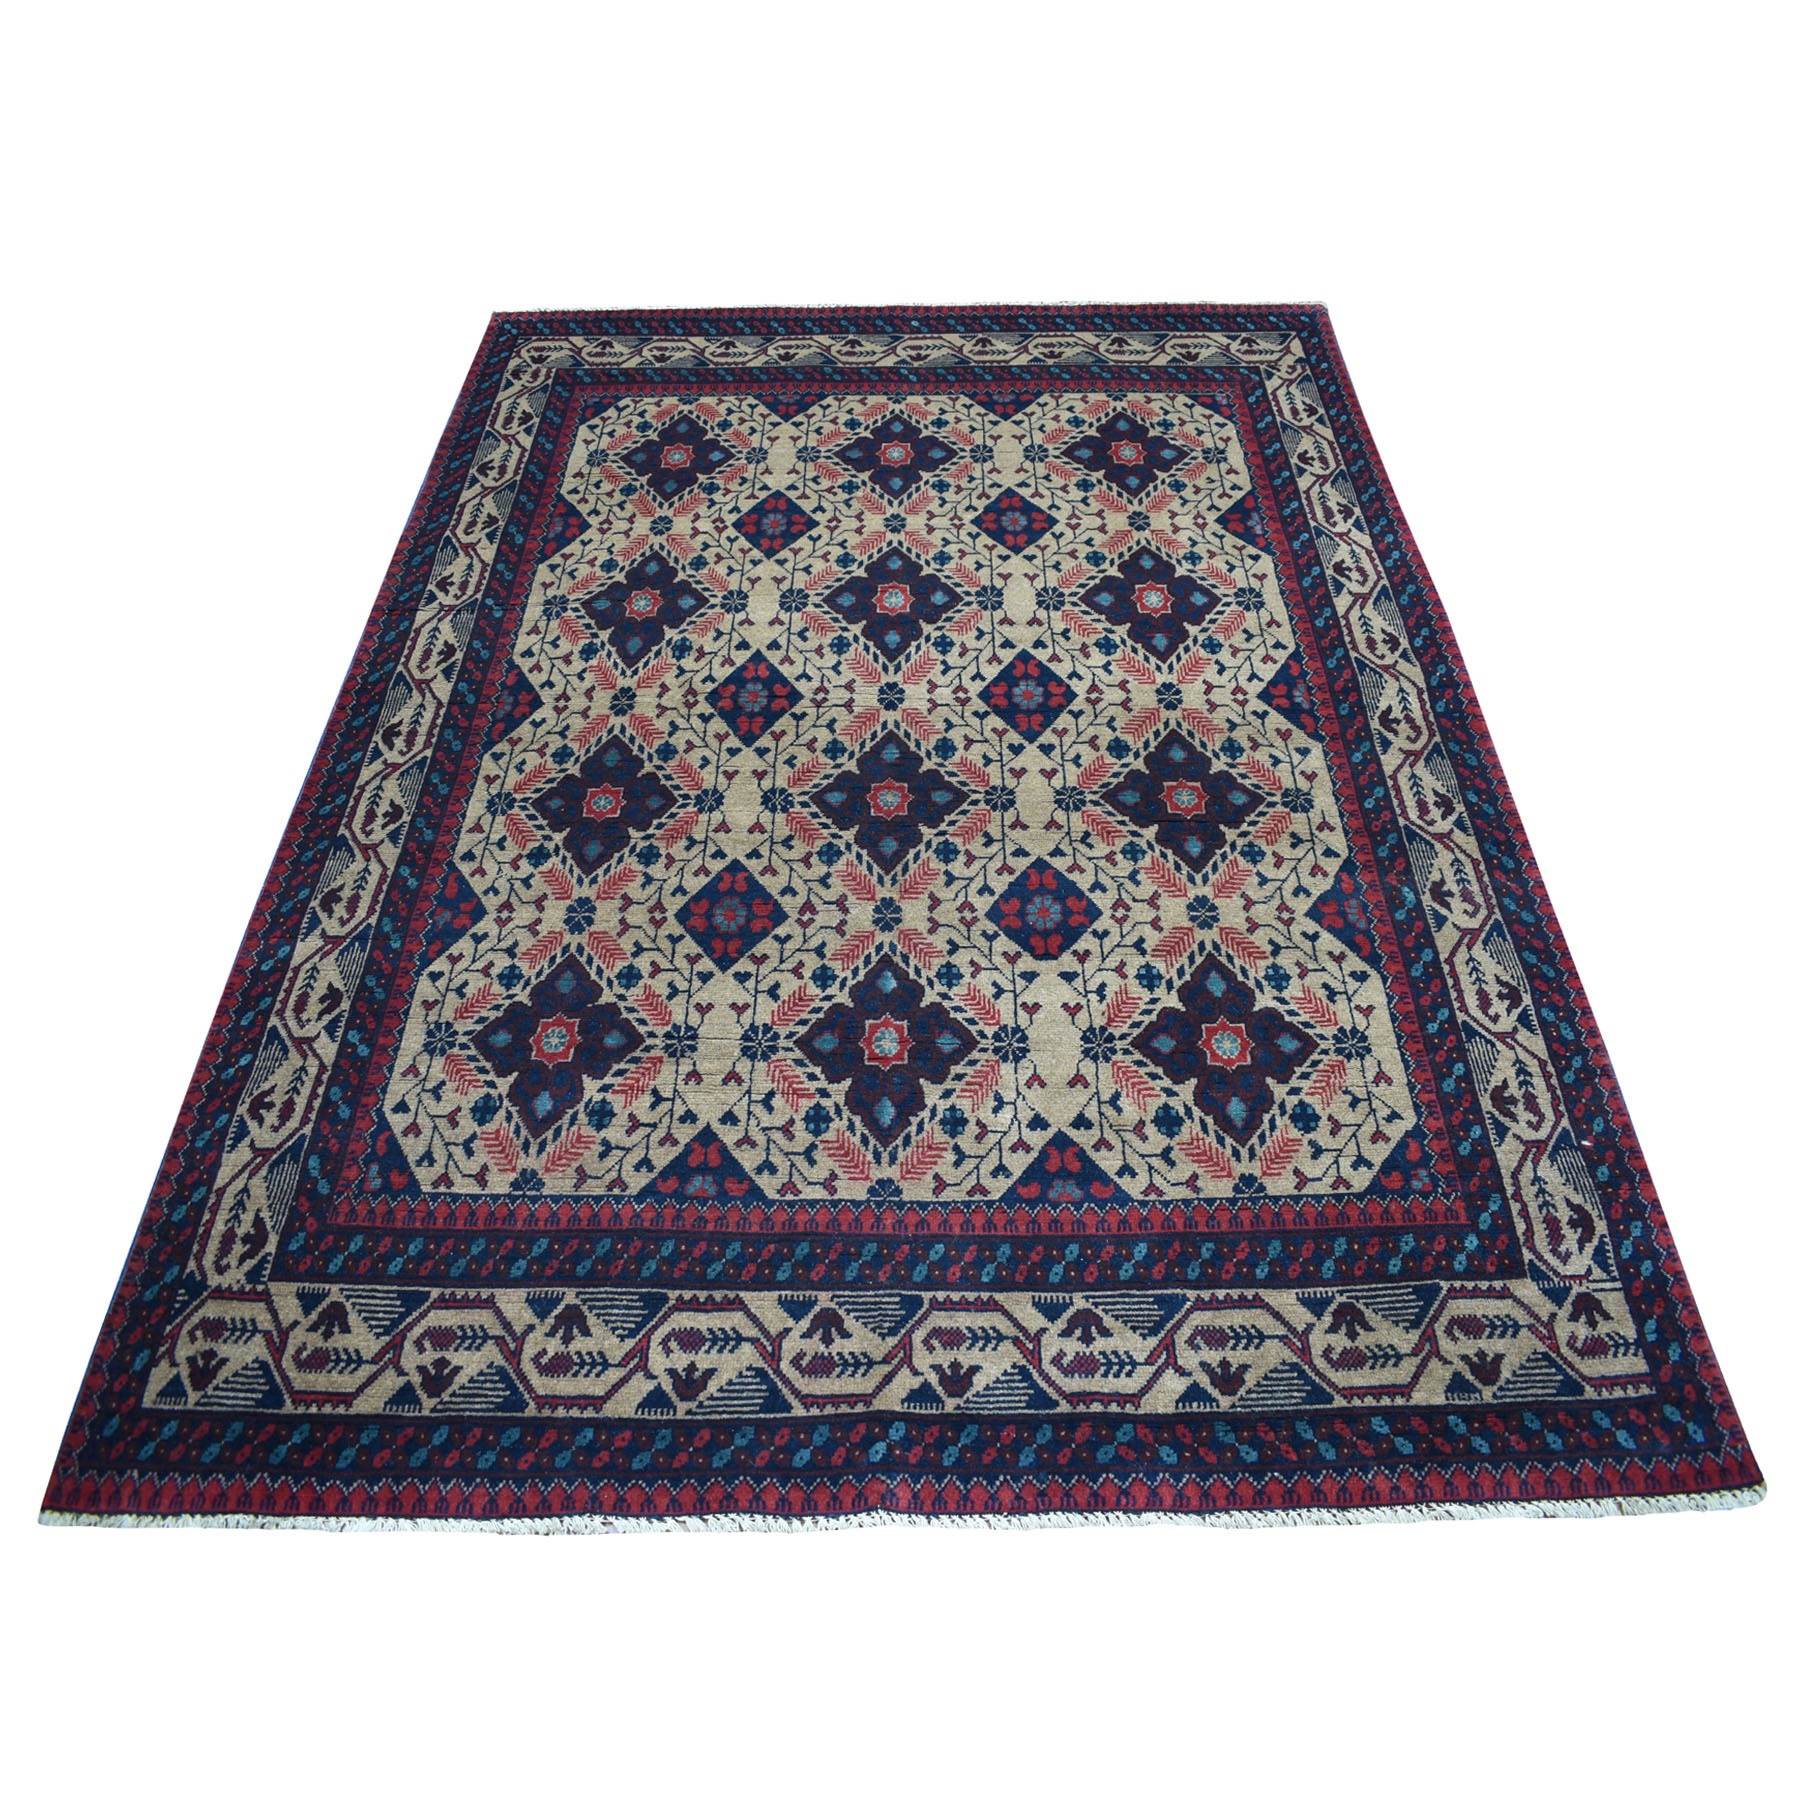 5'6"x7'2" Vintage Look Geometric Afghan Andkhoy Pure Wool Hand Woven Oriental Rug 